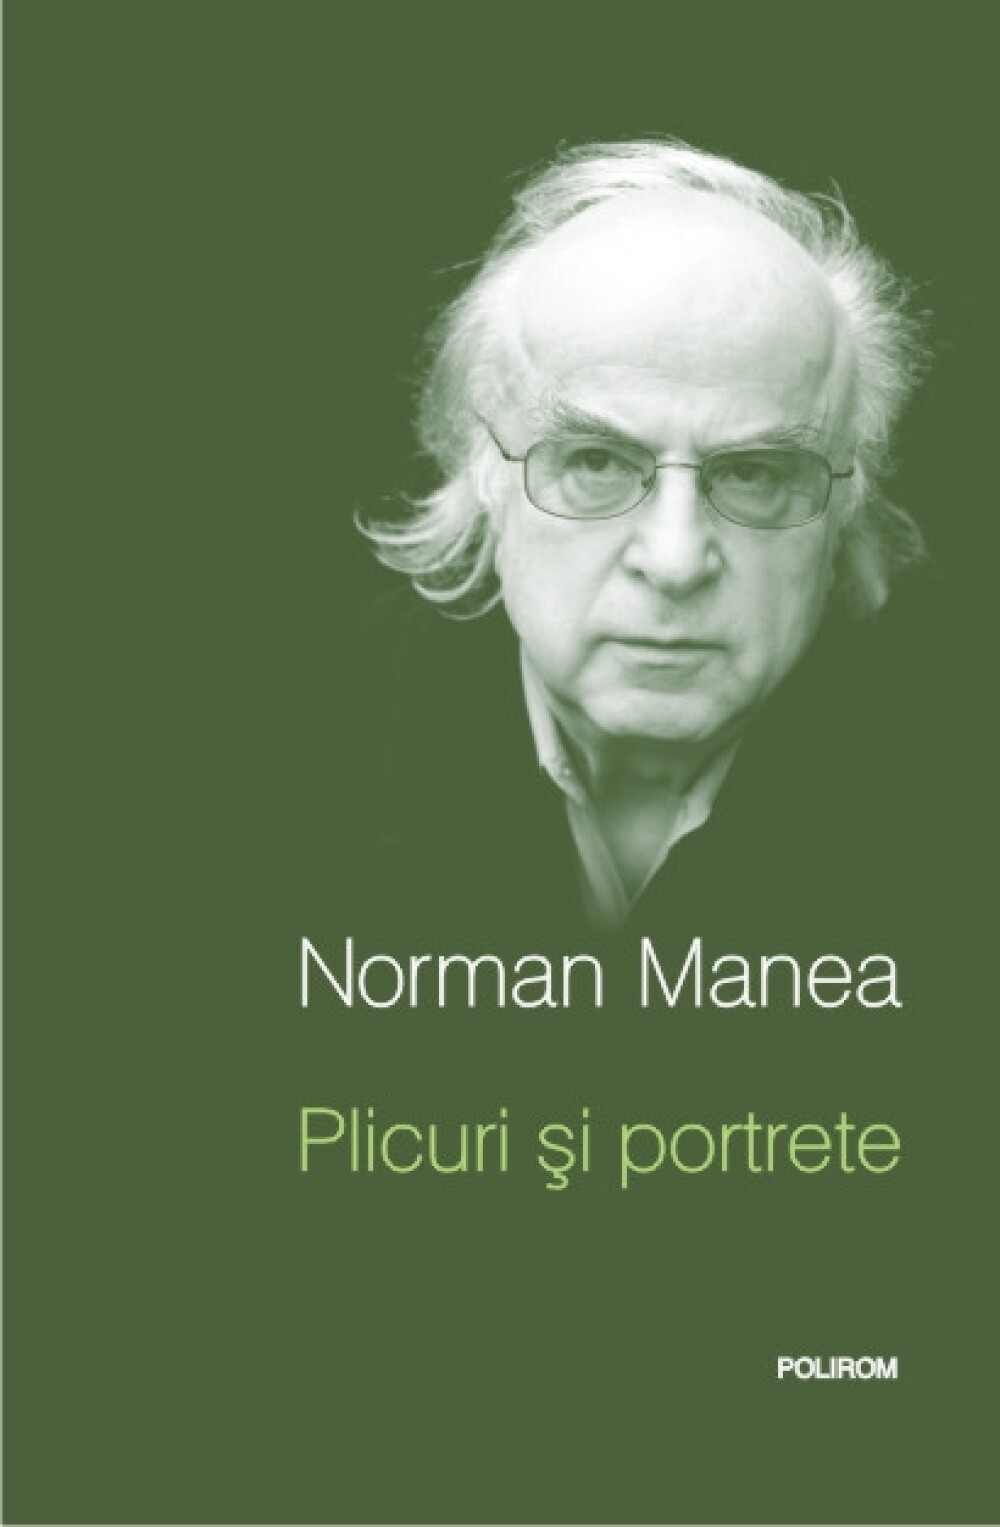 Norman Manea, cel mai tradus autor de limba romana vine la Sibiu - Imaginea 2